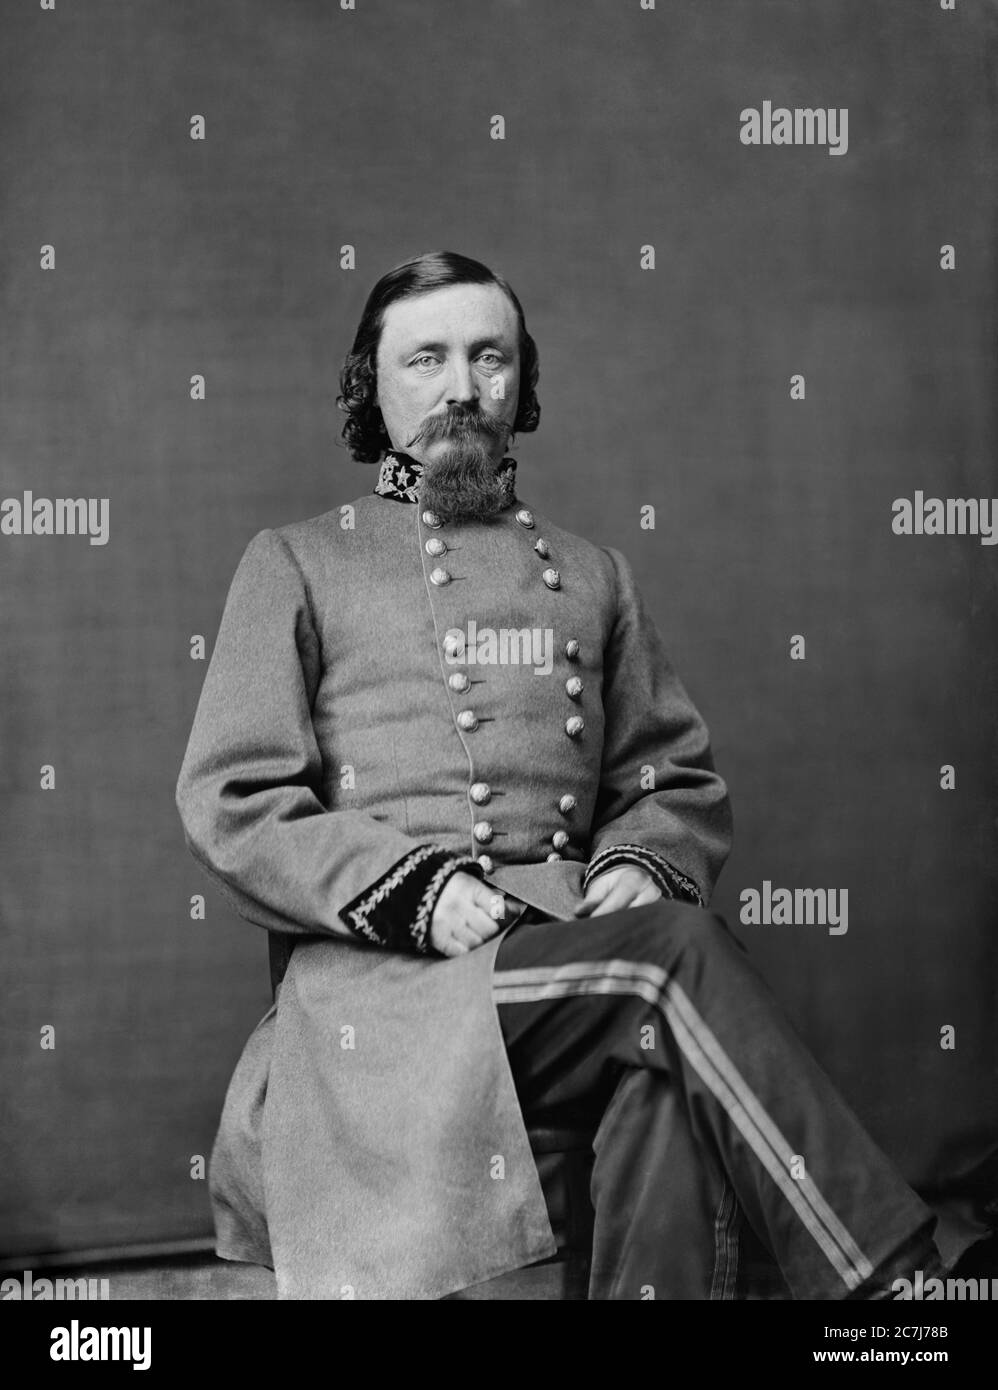 George Pickett, général, Armée des États confédérés, Guerre civile américaine, Portrait assis, Brady-Handy collection de photographies, années 1860 Banque D'Images